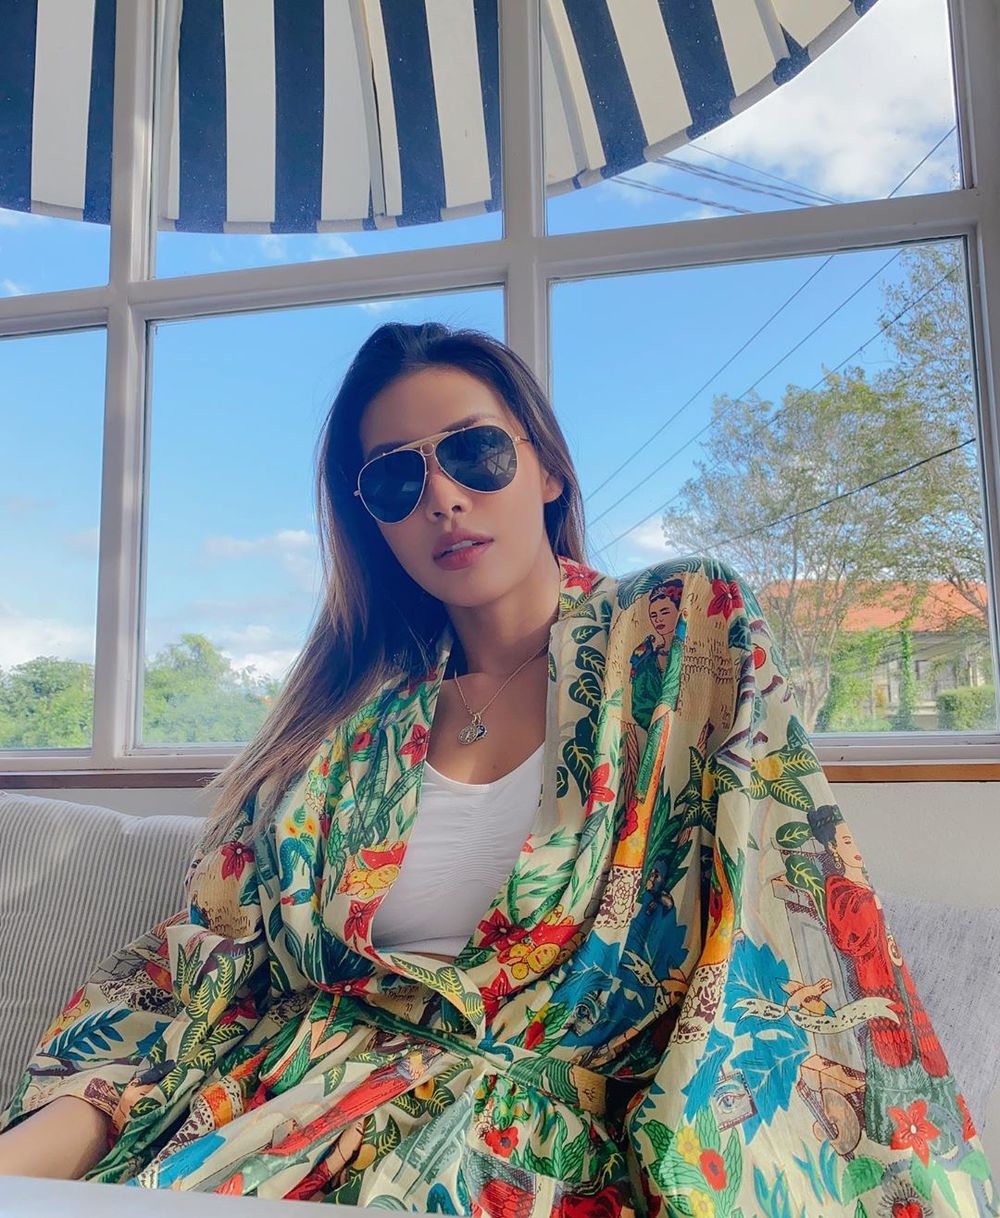  
Minh Tú vẫn đang kẹt ở Bali chưa thể về nước, outfit hôm nay cô chọn là áp croptop trắng phía trong và áo choàng đủ màu sắc, họa tiết nhiệt đới phía ngoài. (Ảnh: Instagram nhân vật)